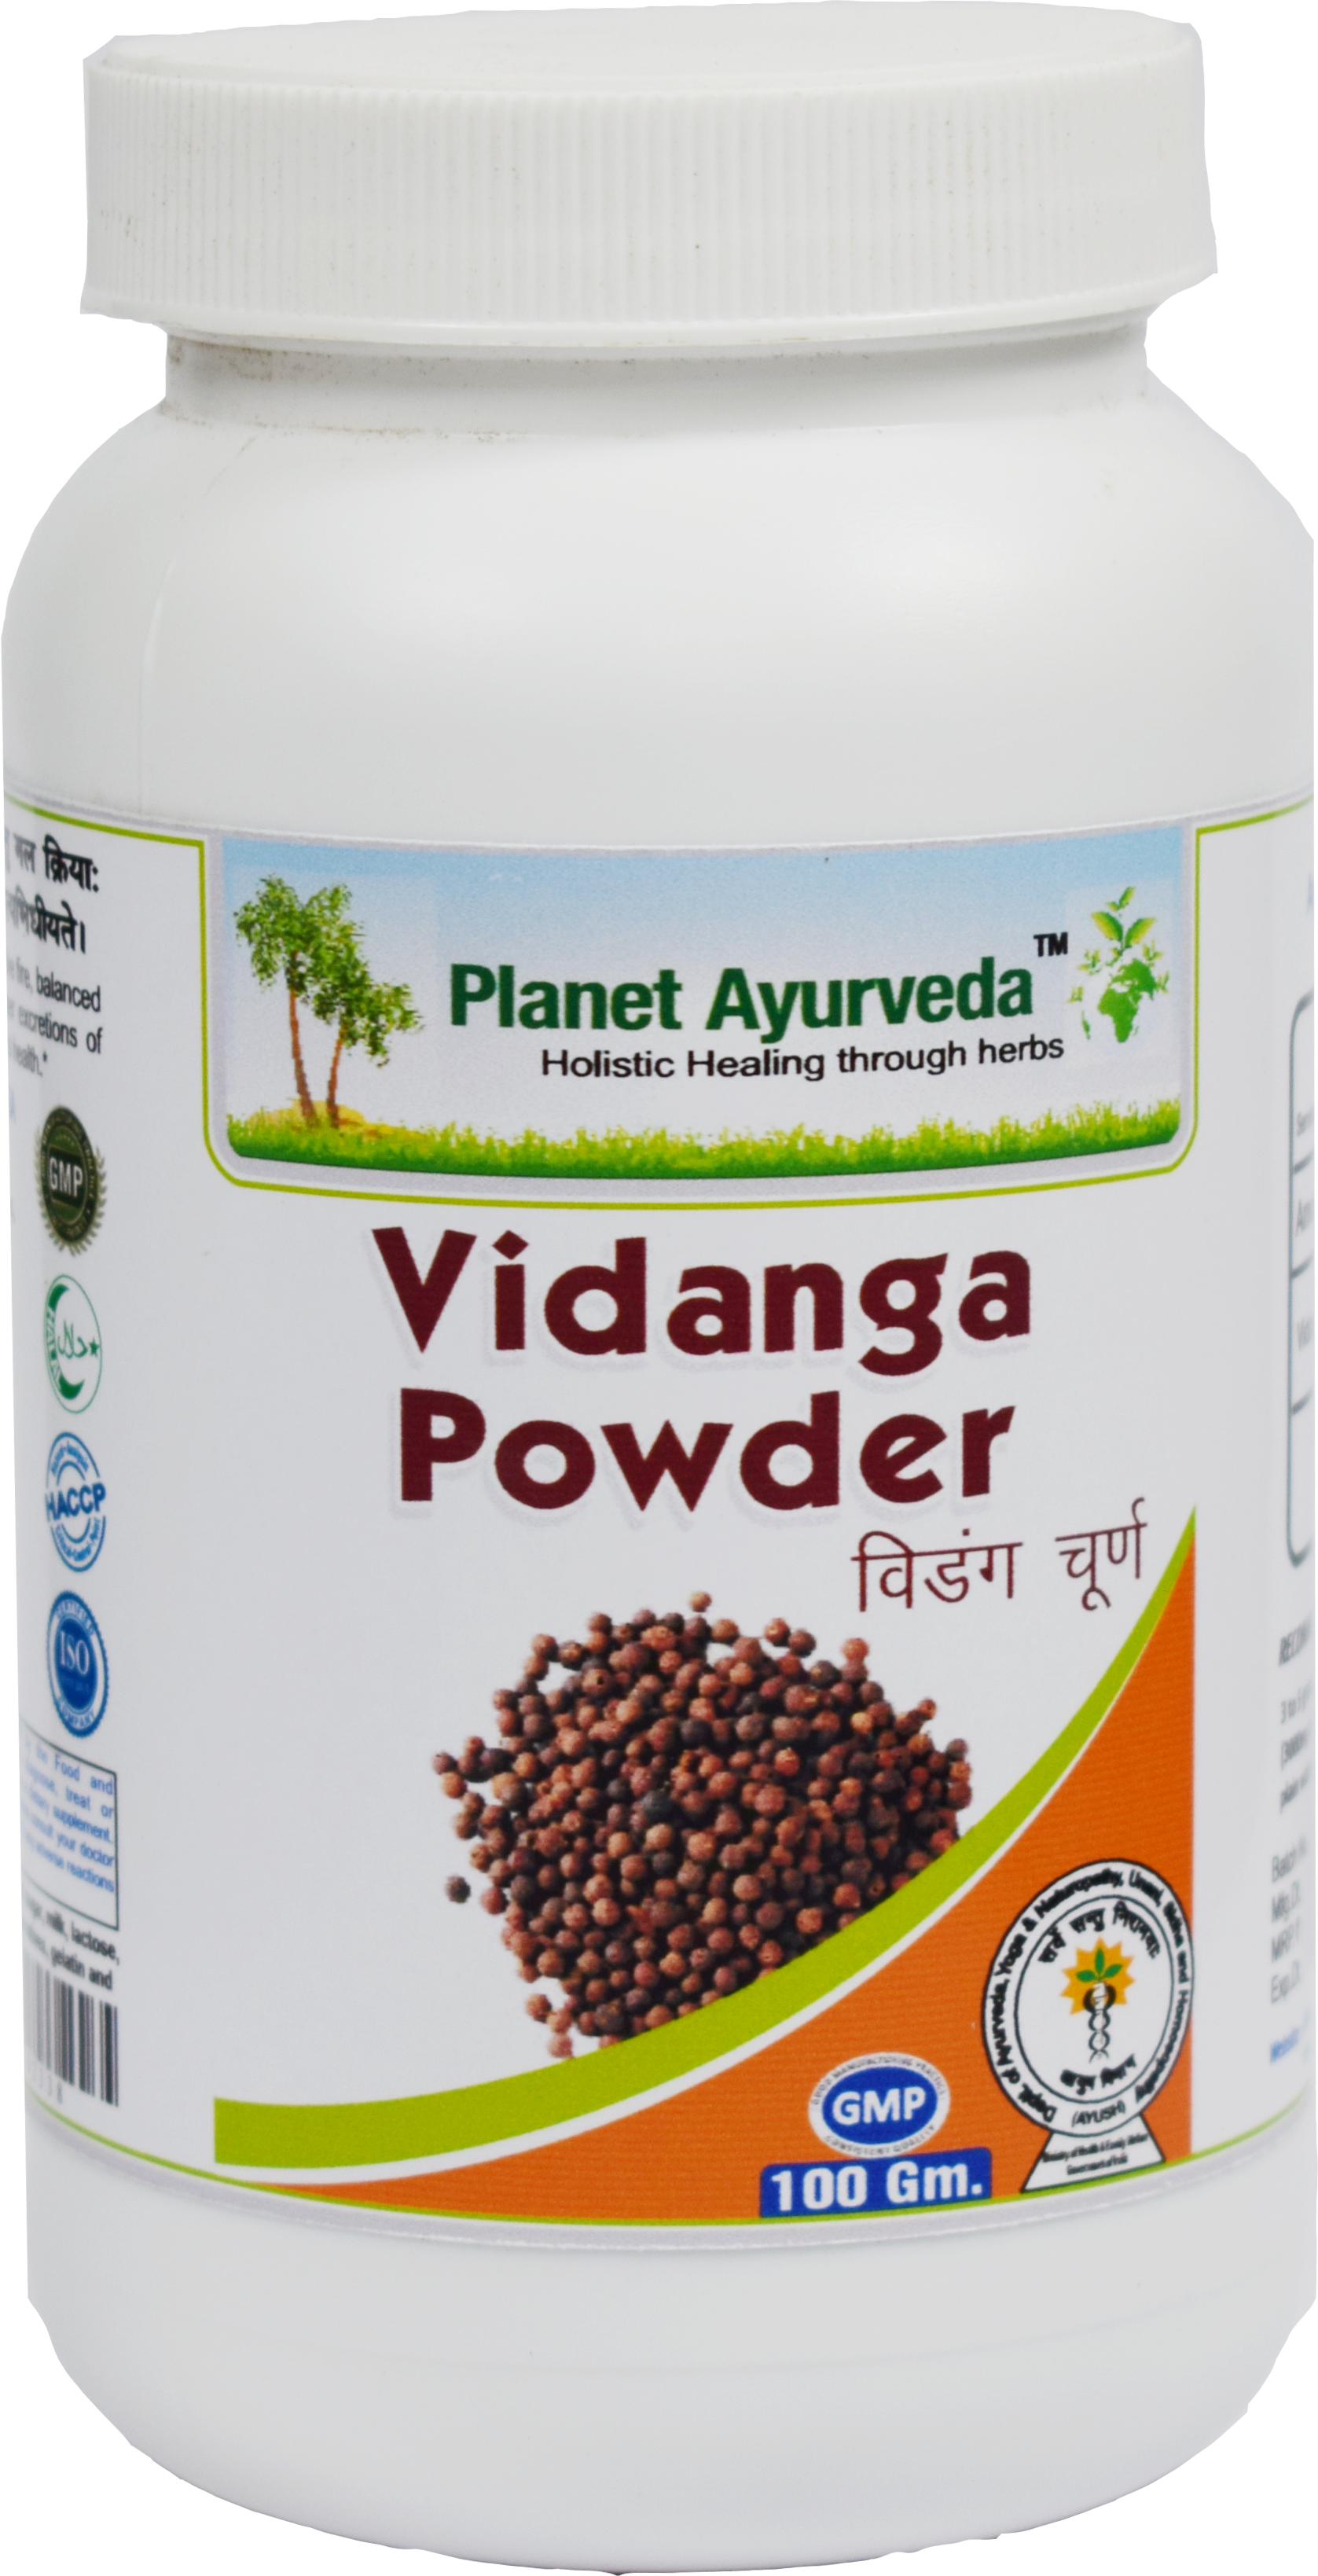 Buy Planet Ayurveda Vidanga Powder at Best Price Online